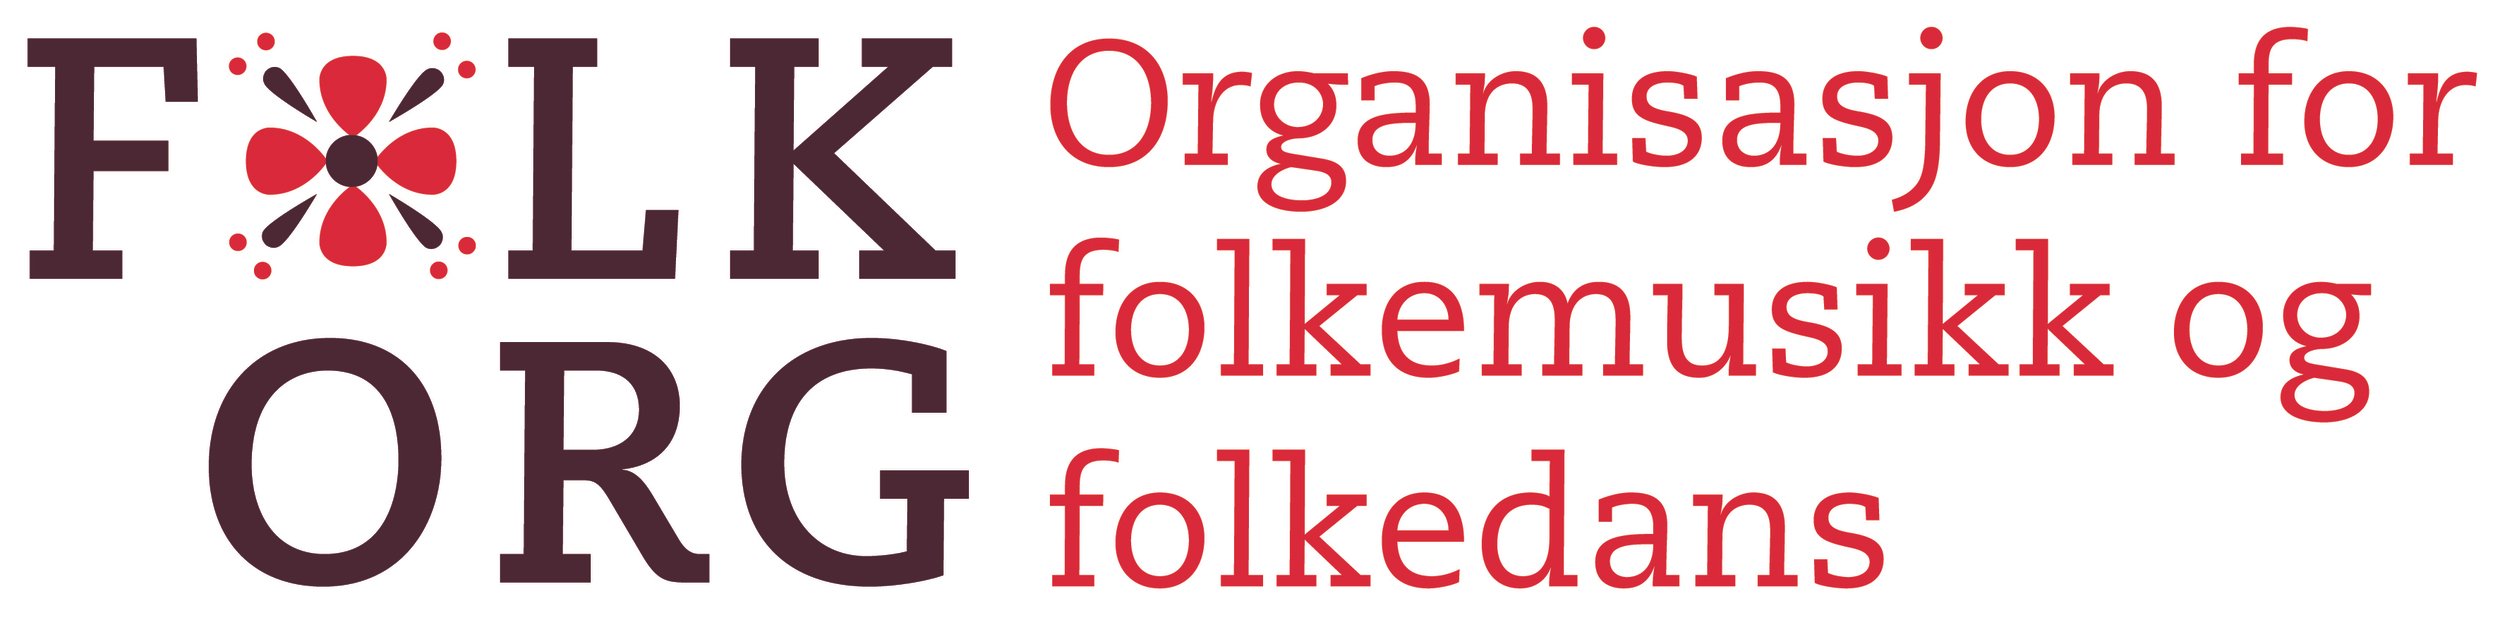 FolkOrg Logo+Tekst_CMYK.jpg